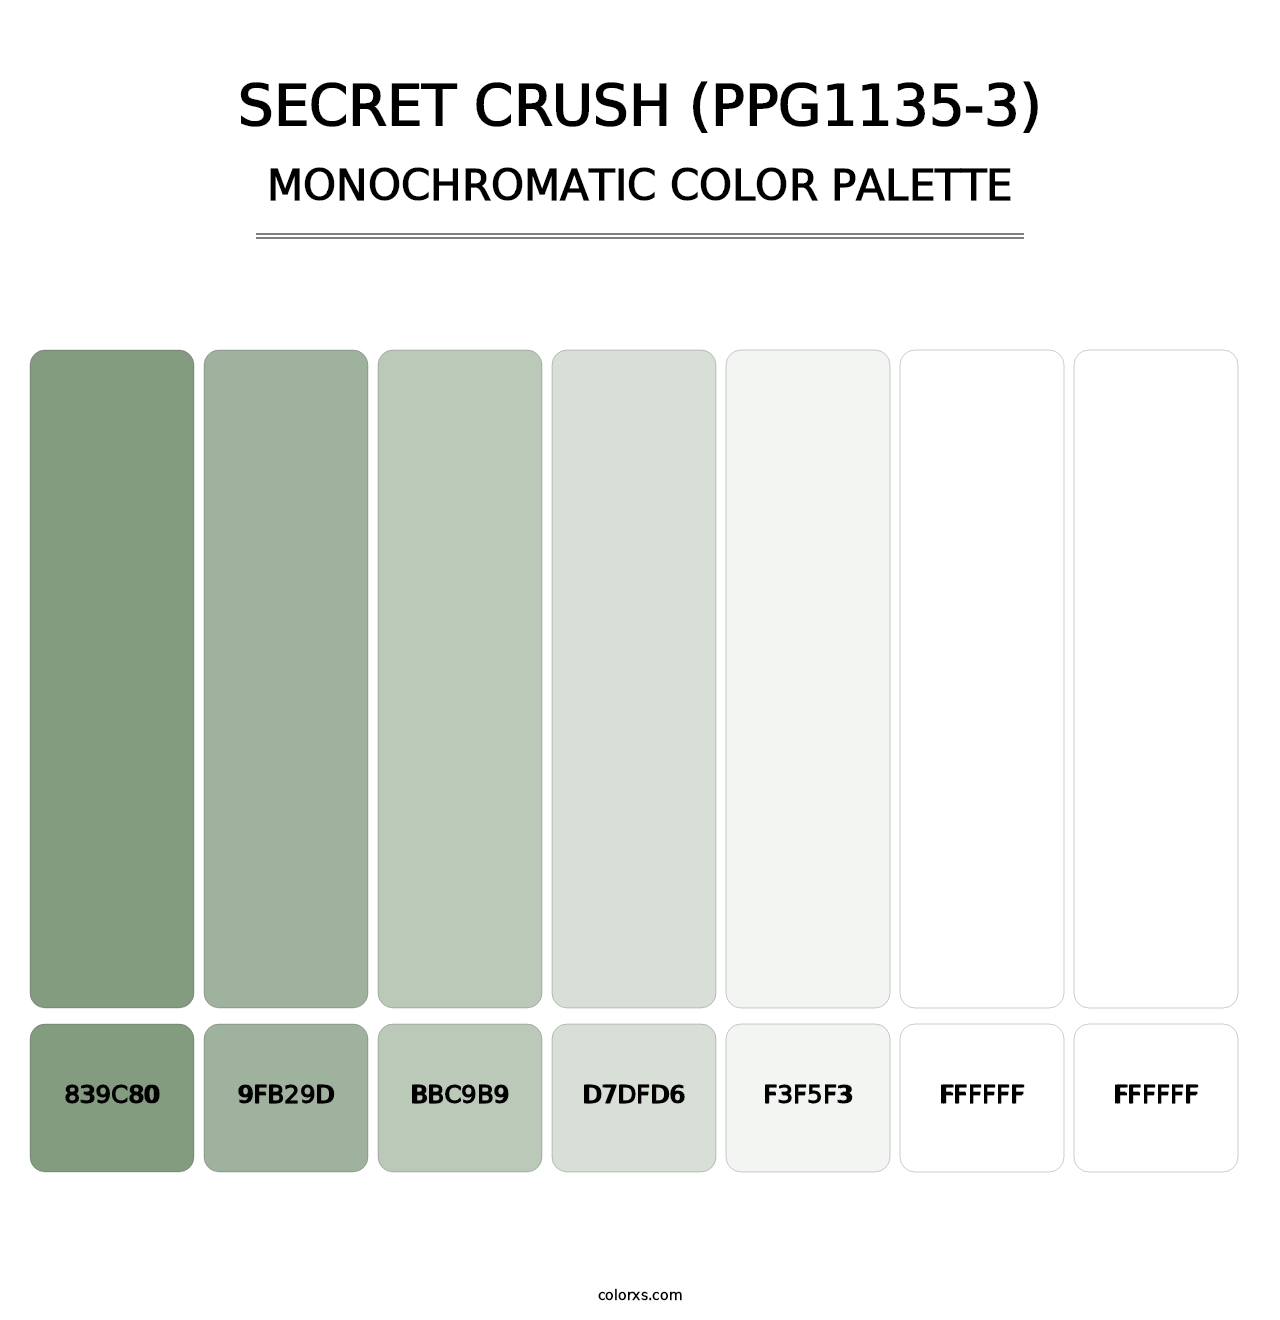 Secret Crush (PPG1135-3) - Monochromatic Color Palette